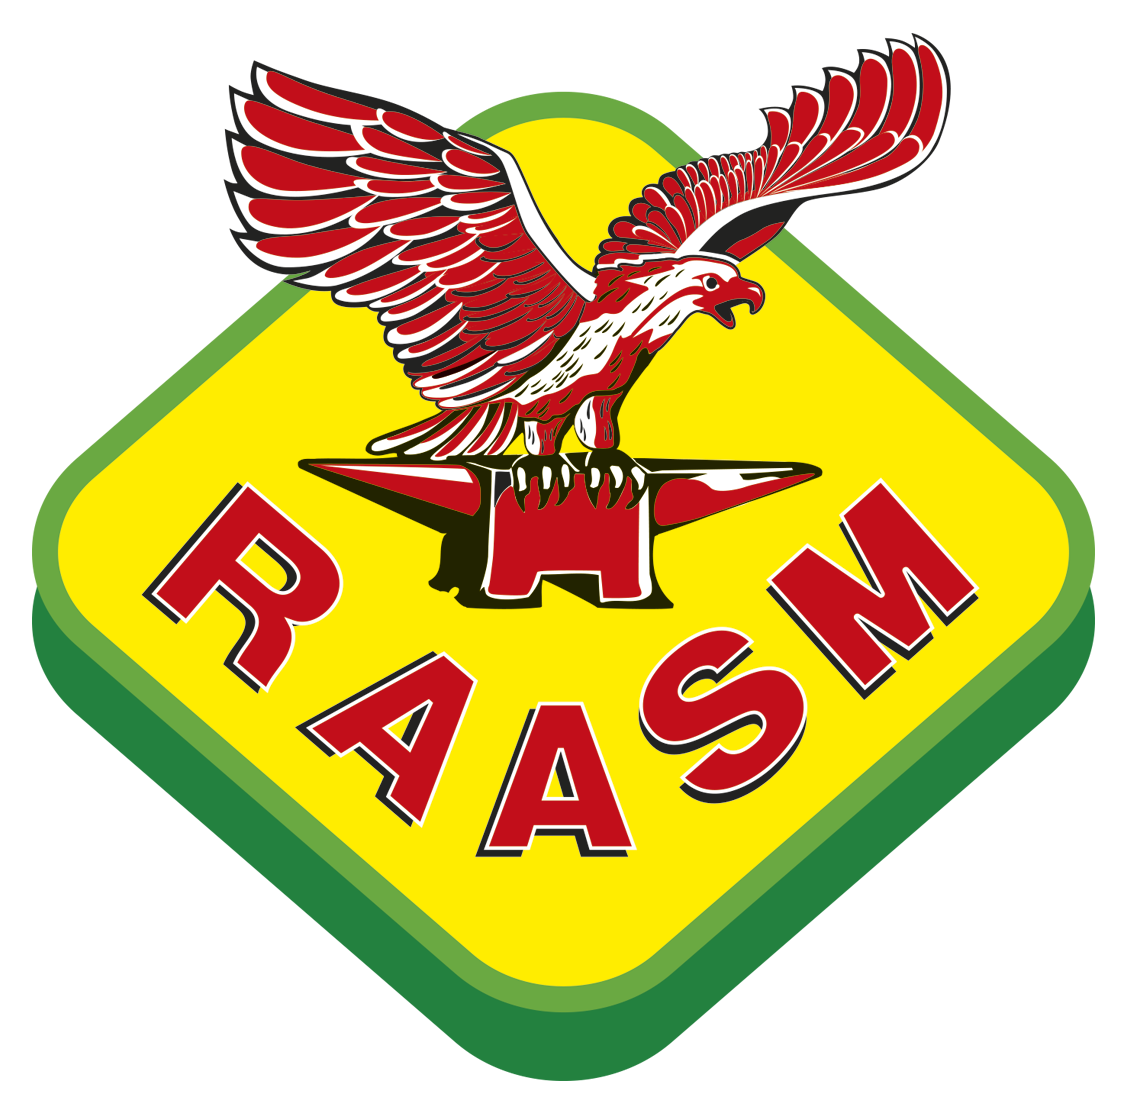 Logo Raasm